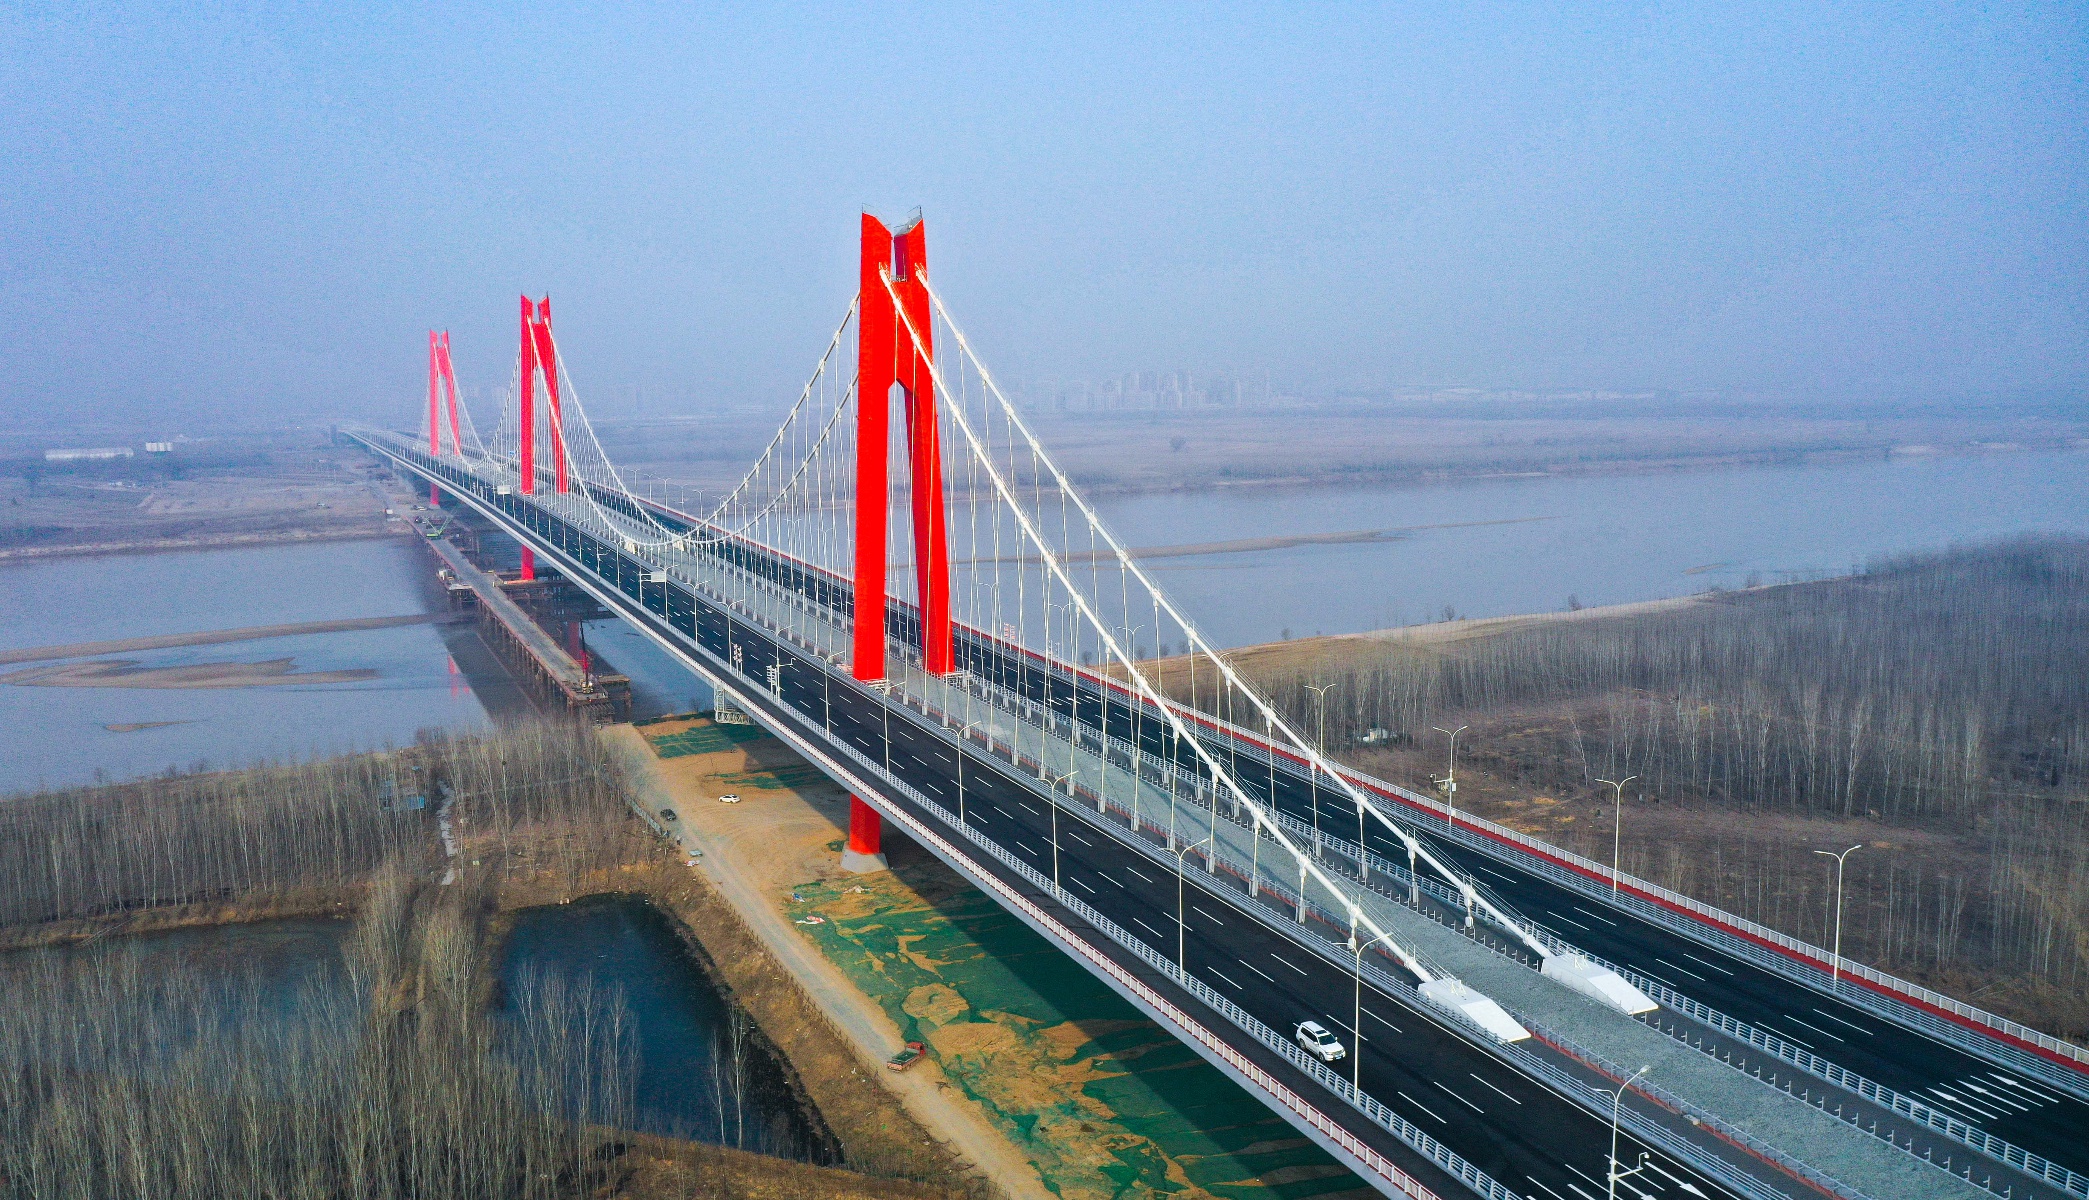 济南凤凰黄河大桥位置图片